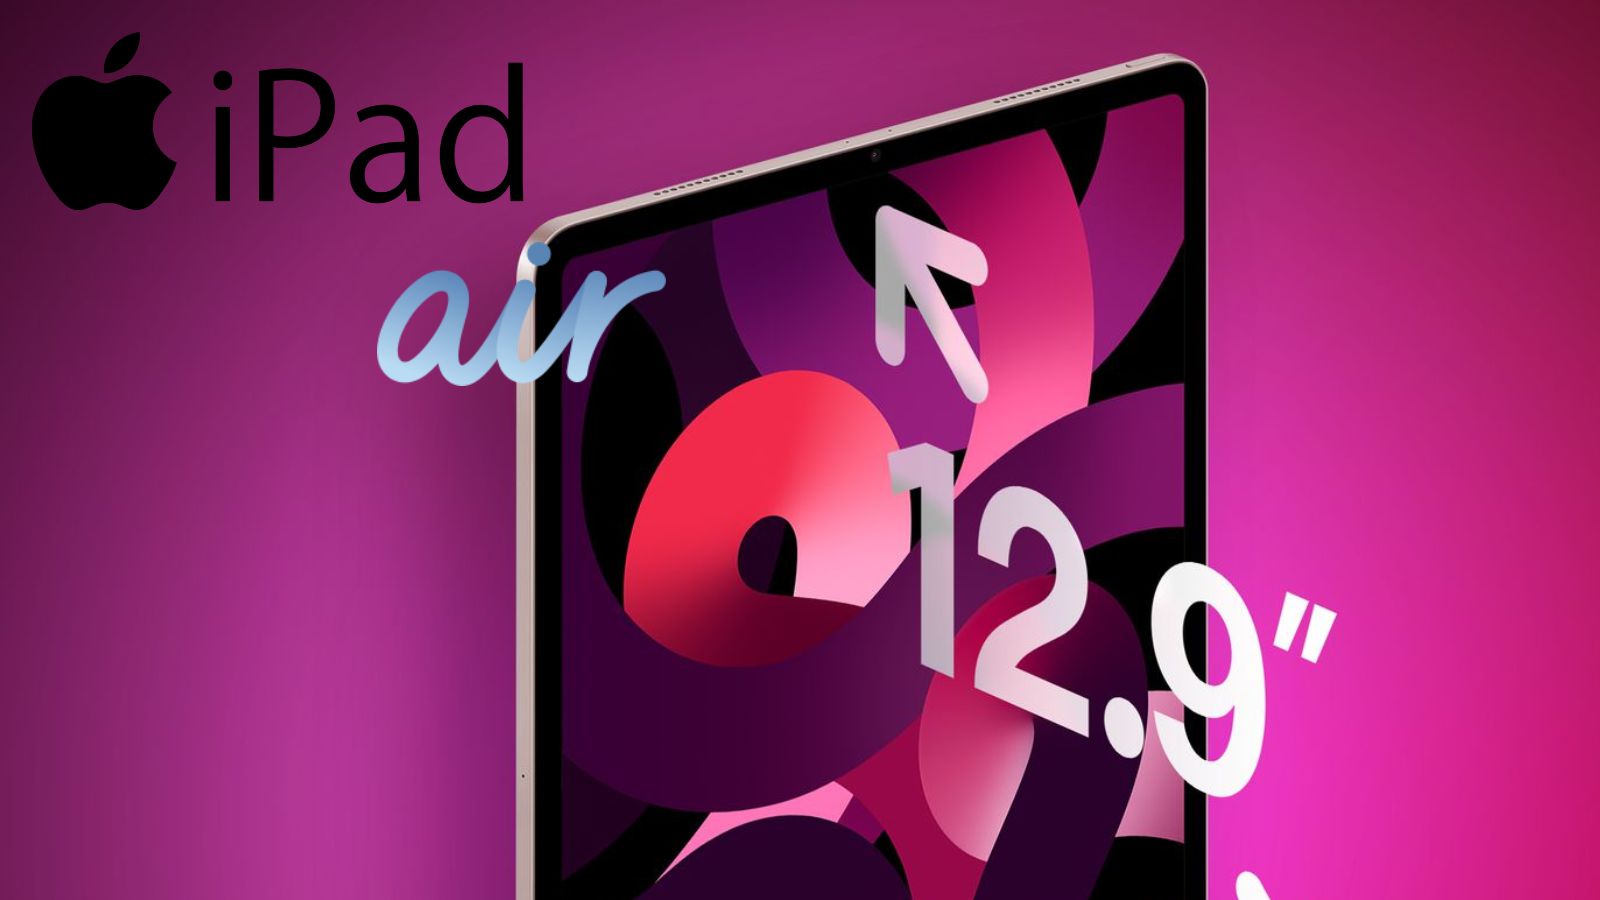 Dei rumor parlano di un iPad Air con un display da 12,9"